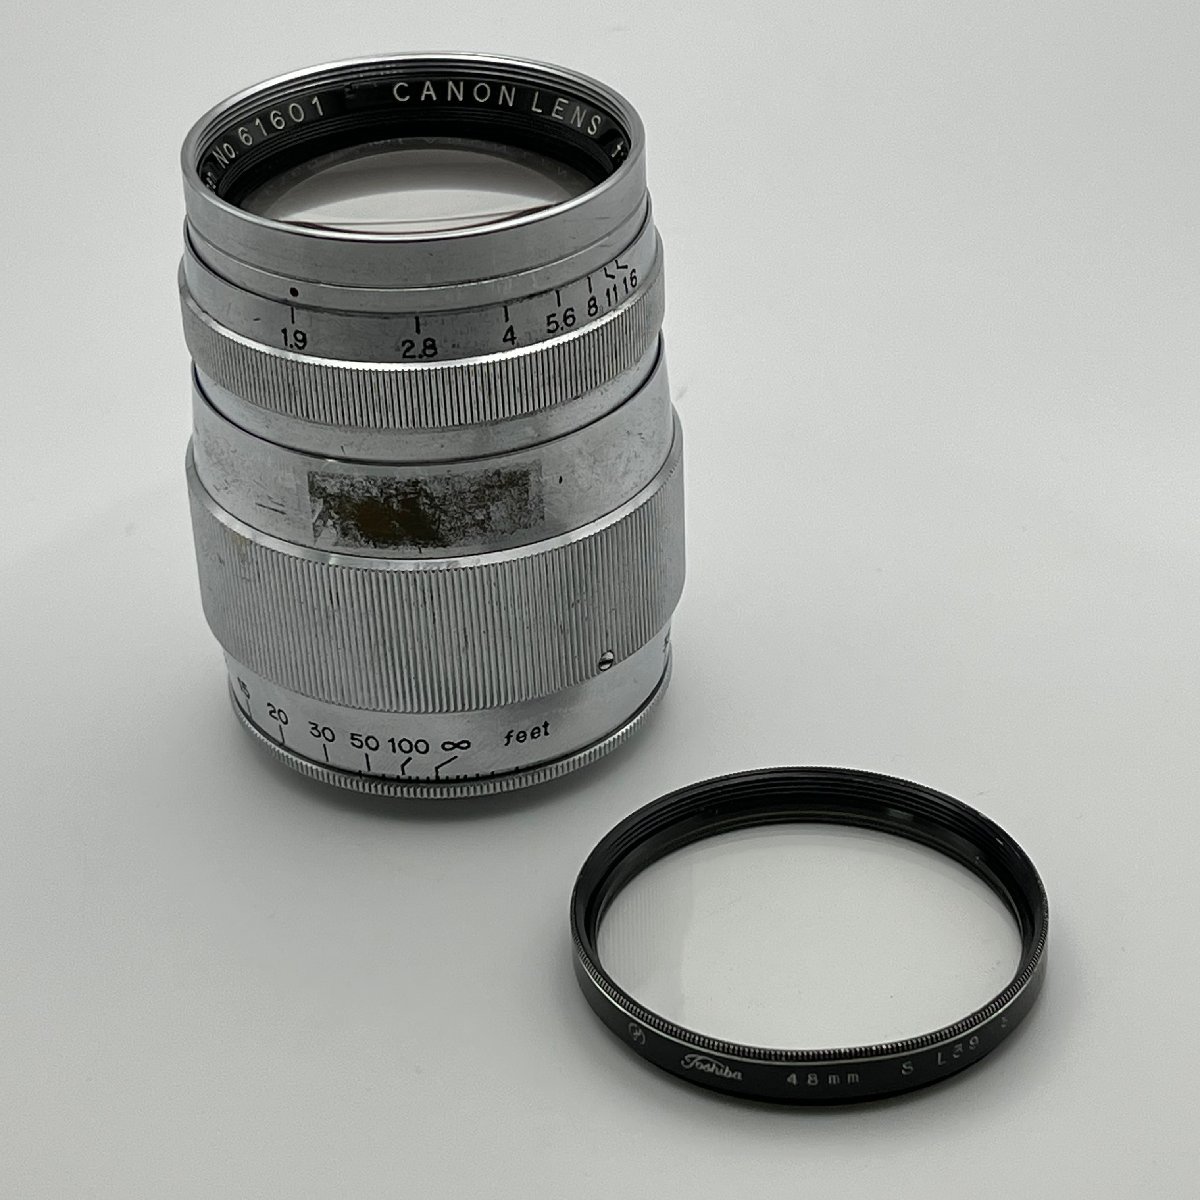 CANON LENS 85mm f1.9 キヤノン レンズ Canon Camera Co. Japan M42マウント_画像1